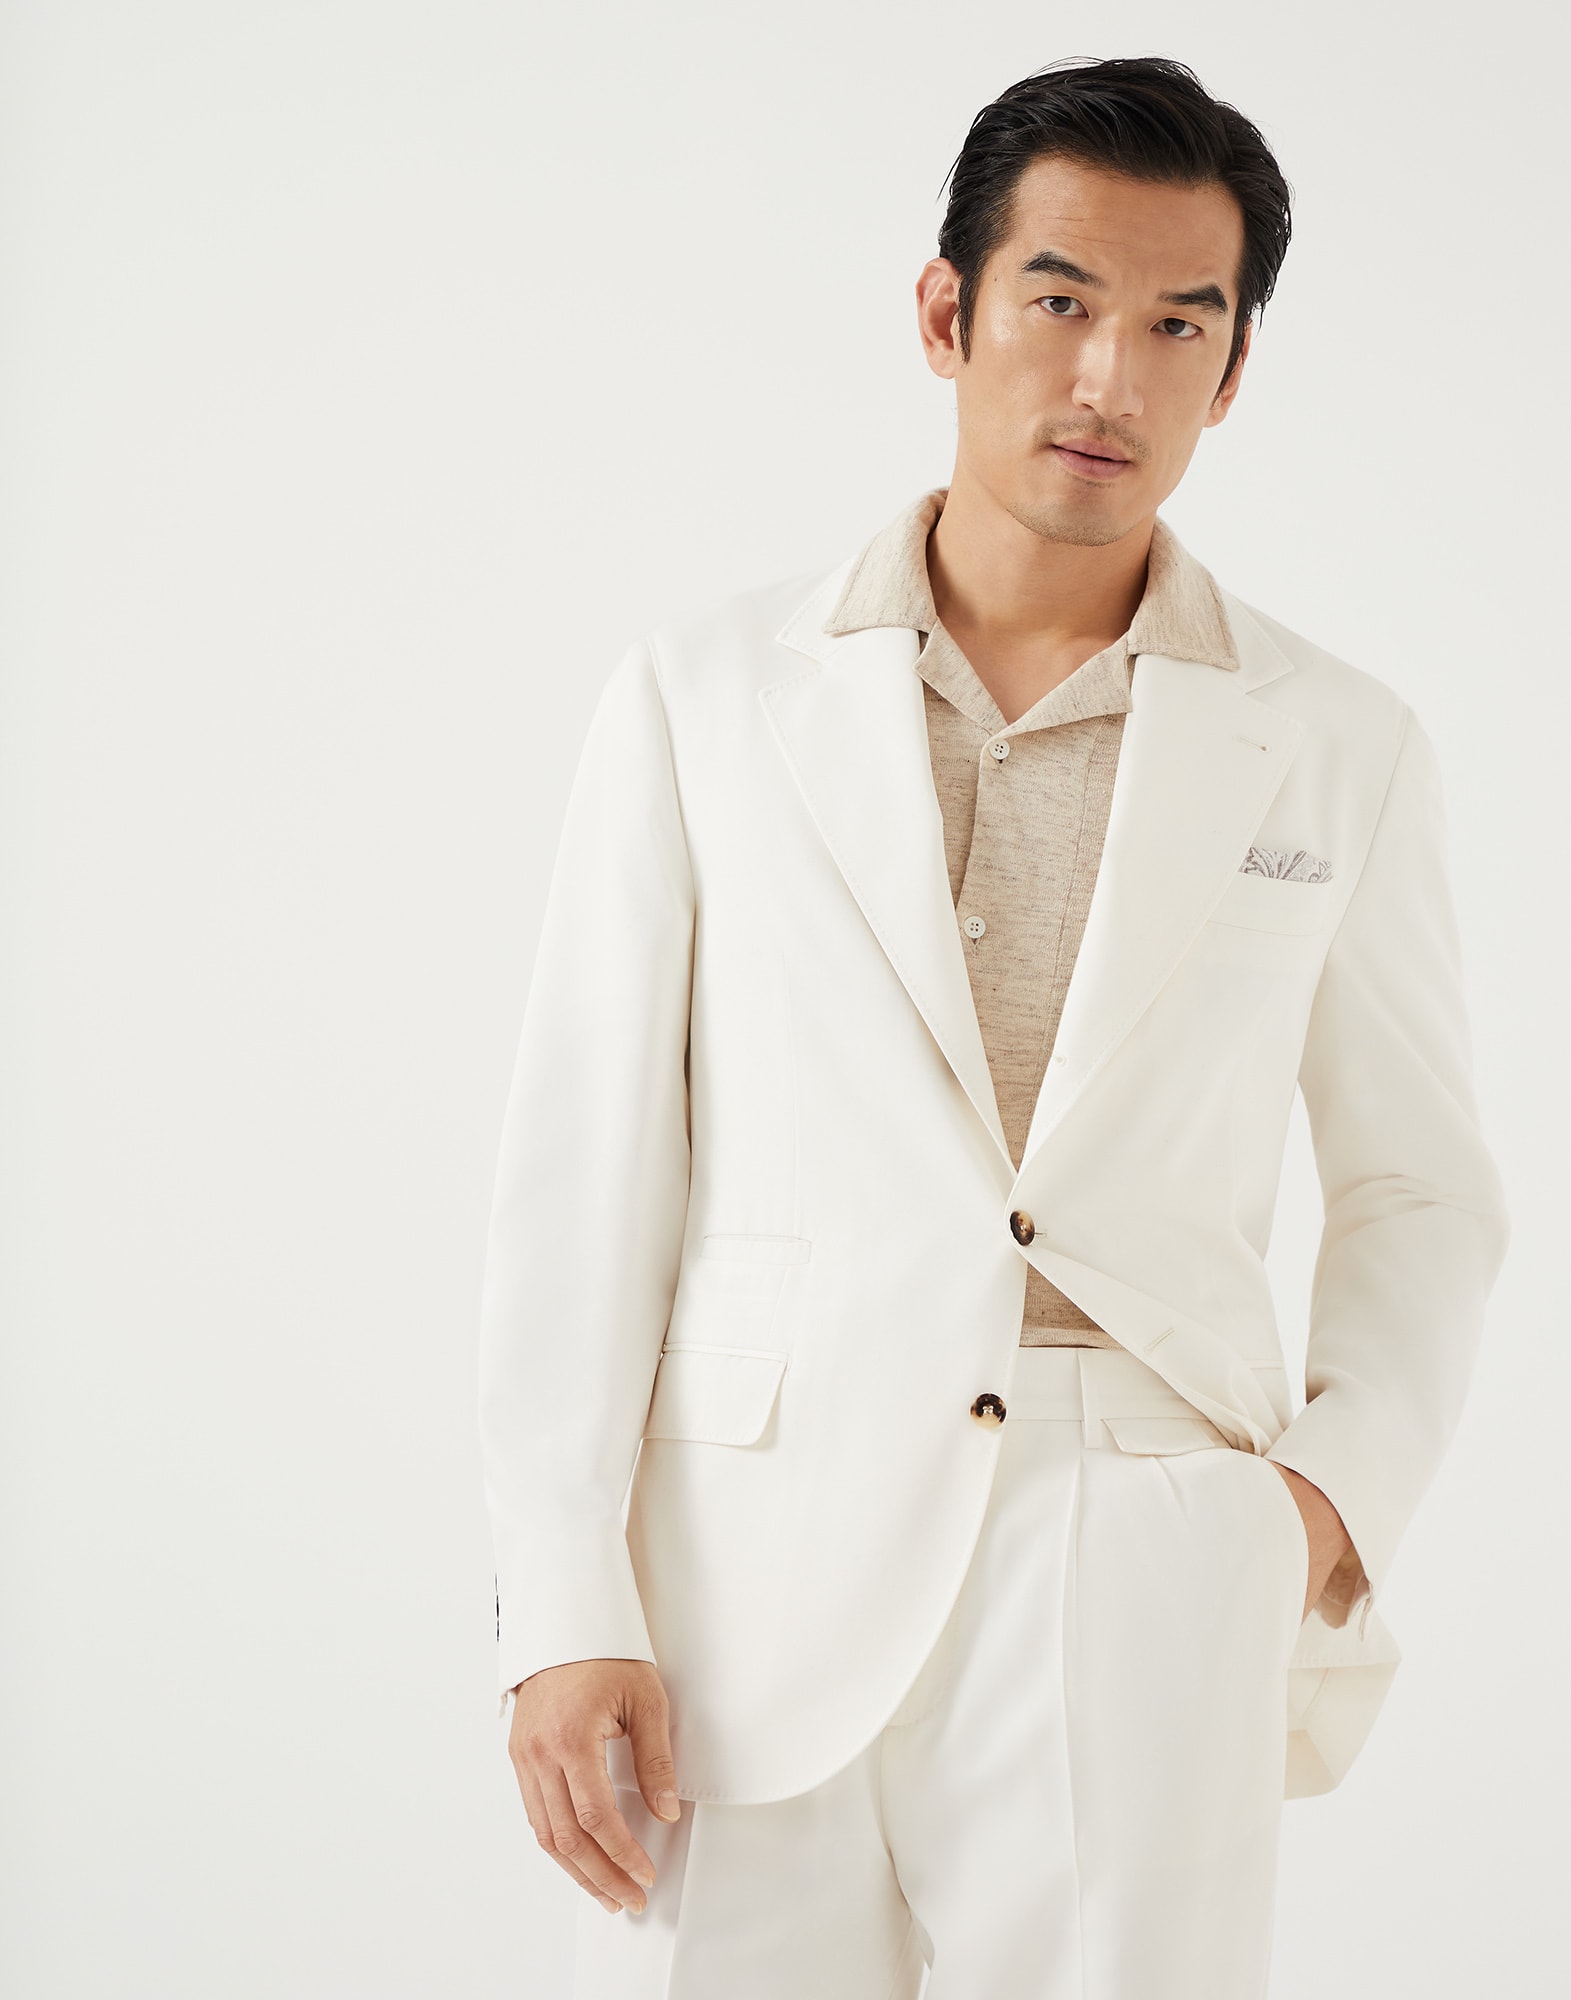 Бесподкладочный пиджак Белый с Сероватым Оттенком Мужчина - Brunello Cucinelli